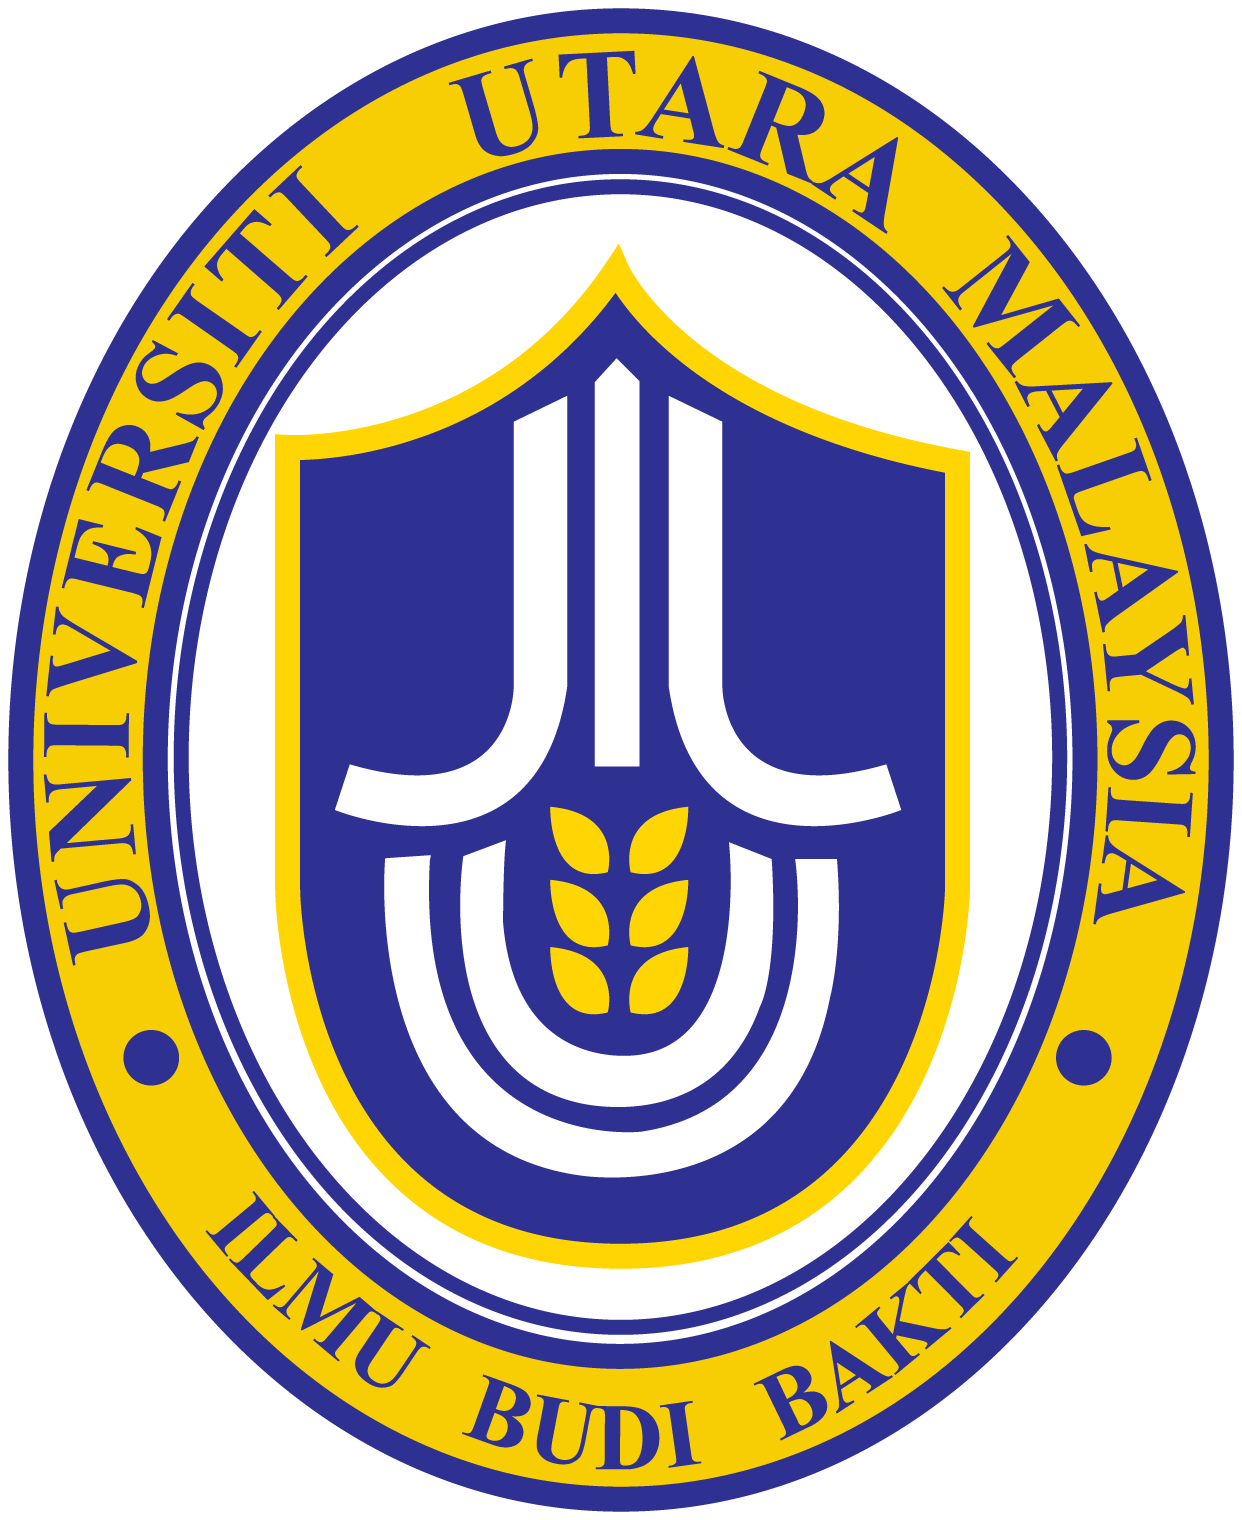 uum logo for assignment